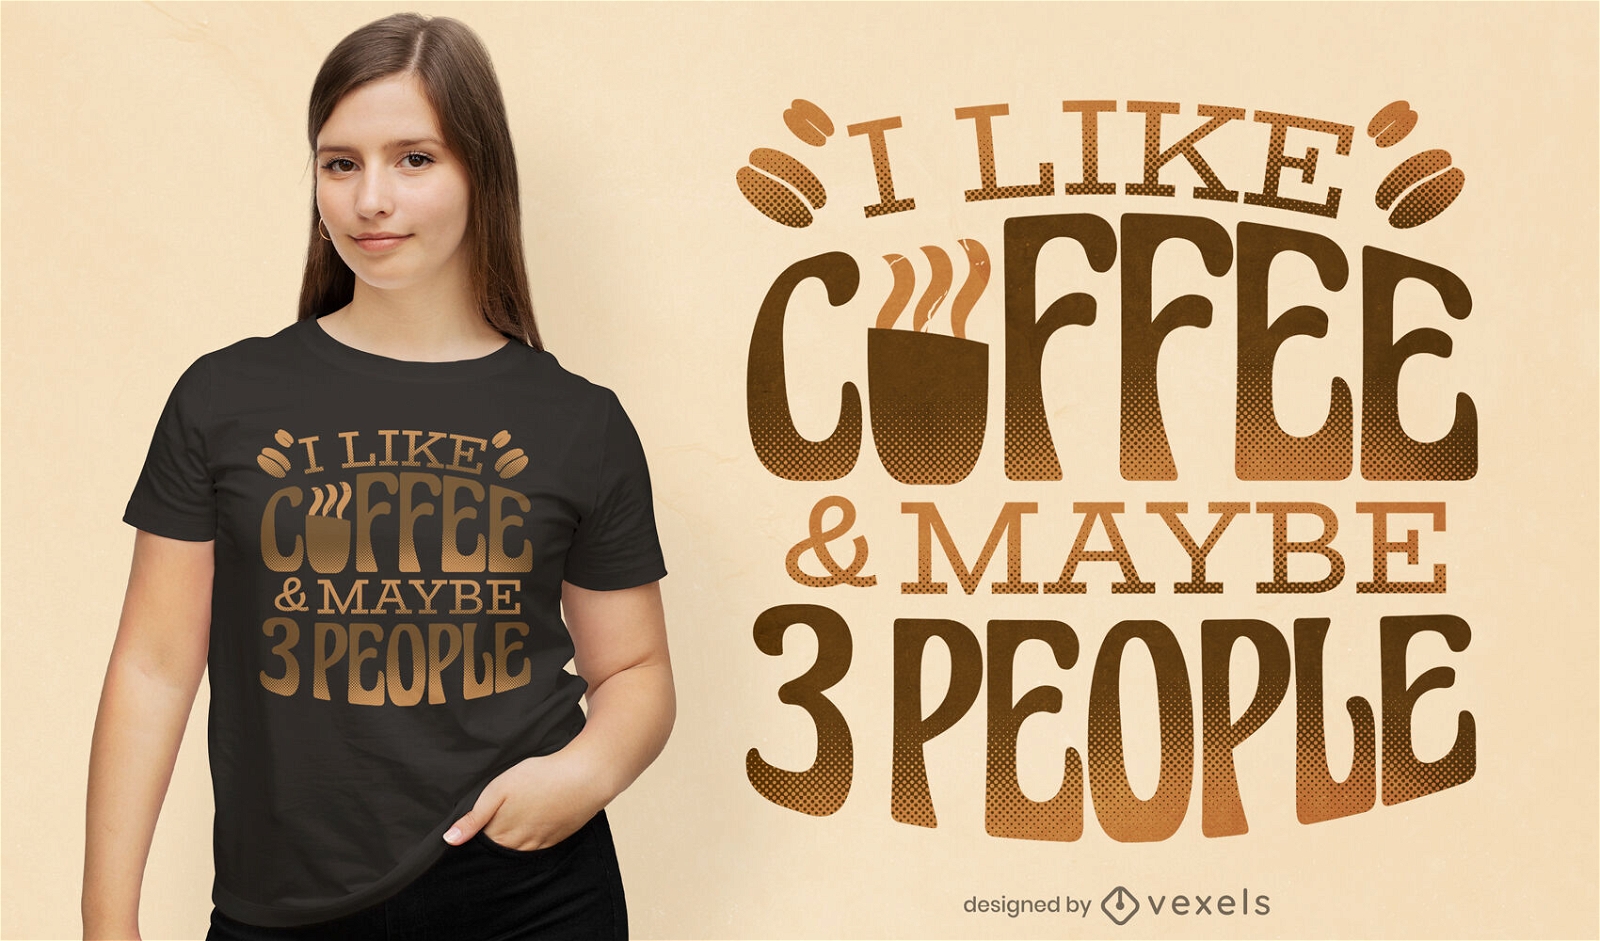 Design engra?ado de t-shirt com cita?es de caf?